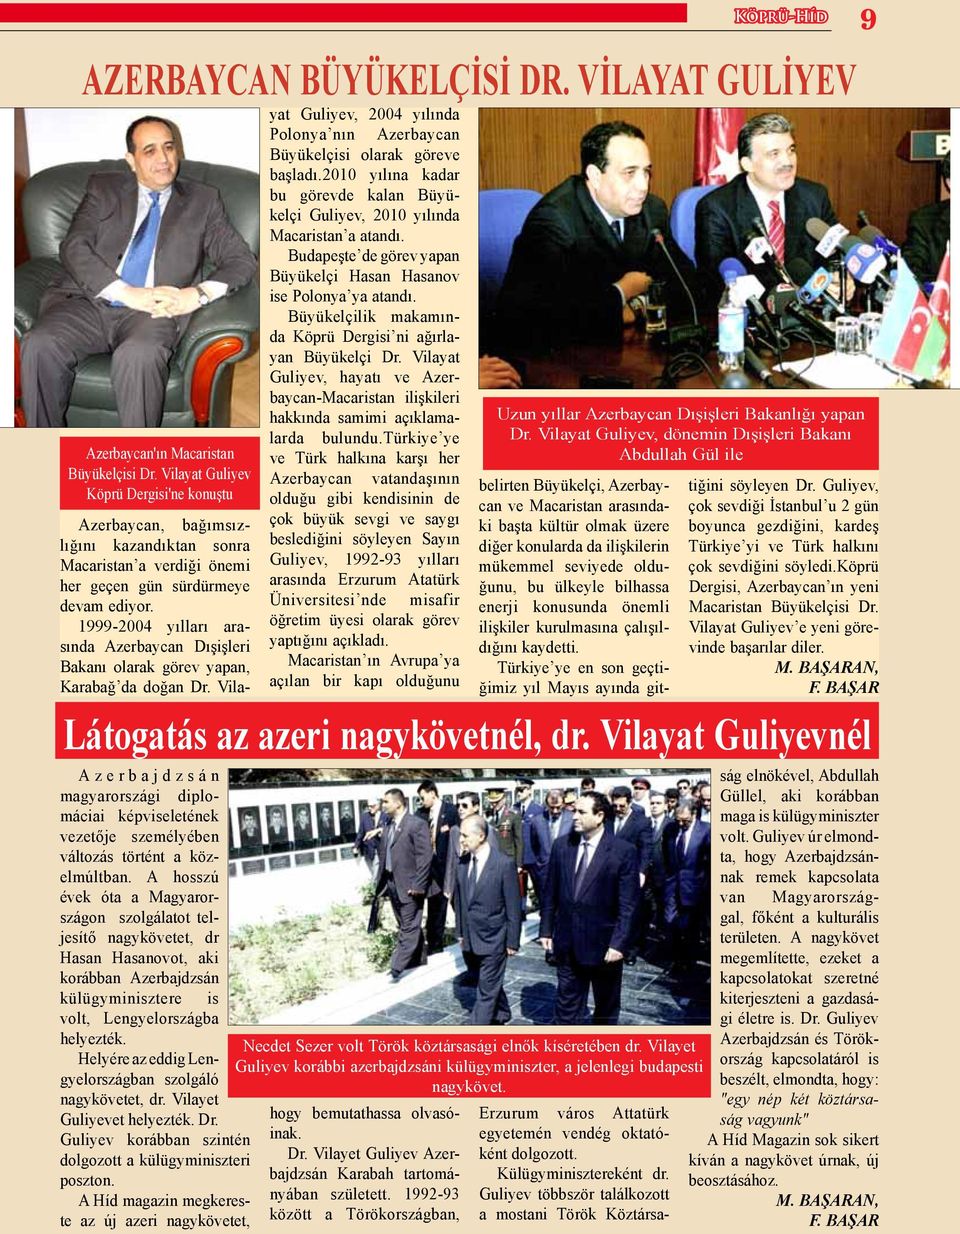 Helyére az eddig Lengyelországban szolgáló nagykövetet, dr. Vilayet Guliyevet helyezték. Dr. Guliyev korábban szintén dolgozott a külügyminiszteri poszton.